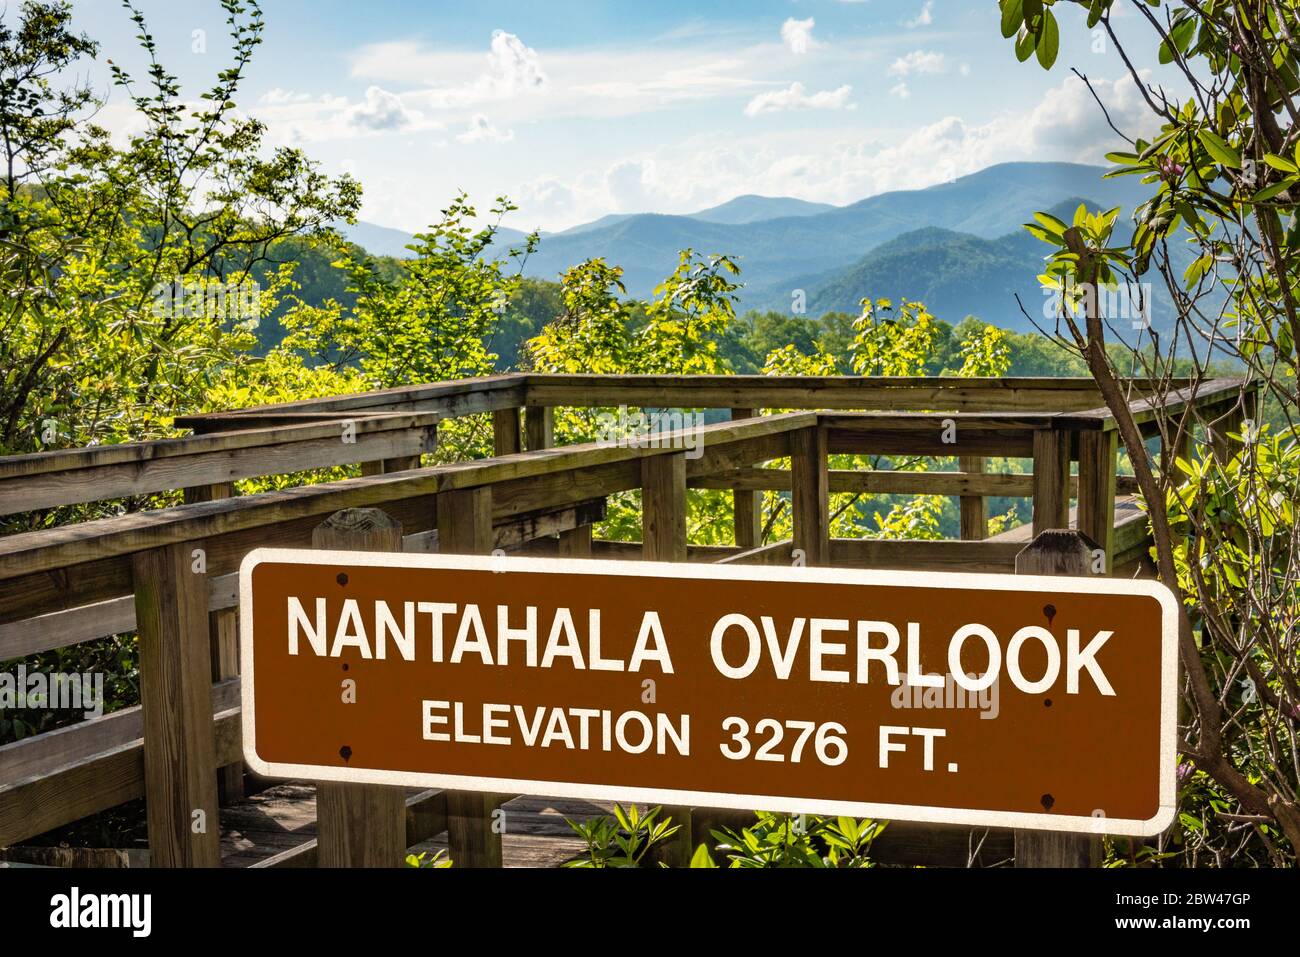 Nantahala surplombe le parc national de Black Rock Mountain, le parc national le plus élevé de Géorgie. (ÉTATS-UNIS) Banque D'Images